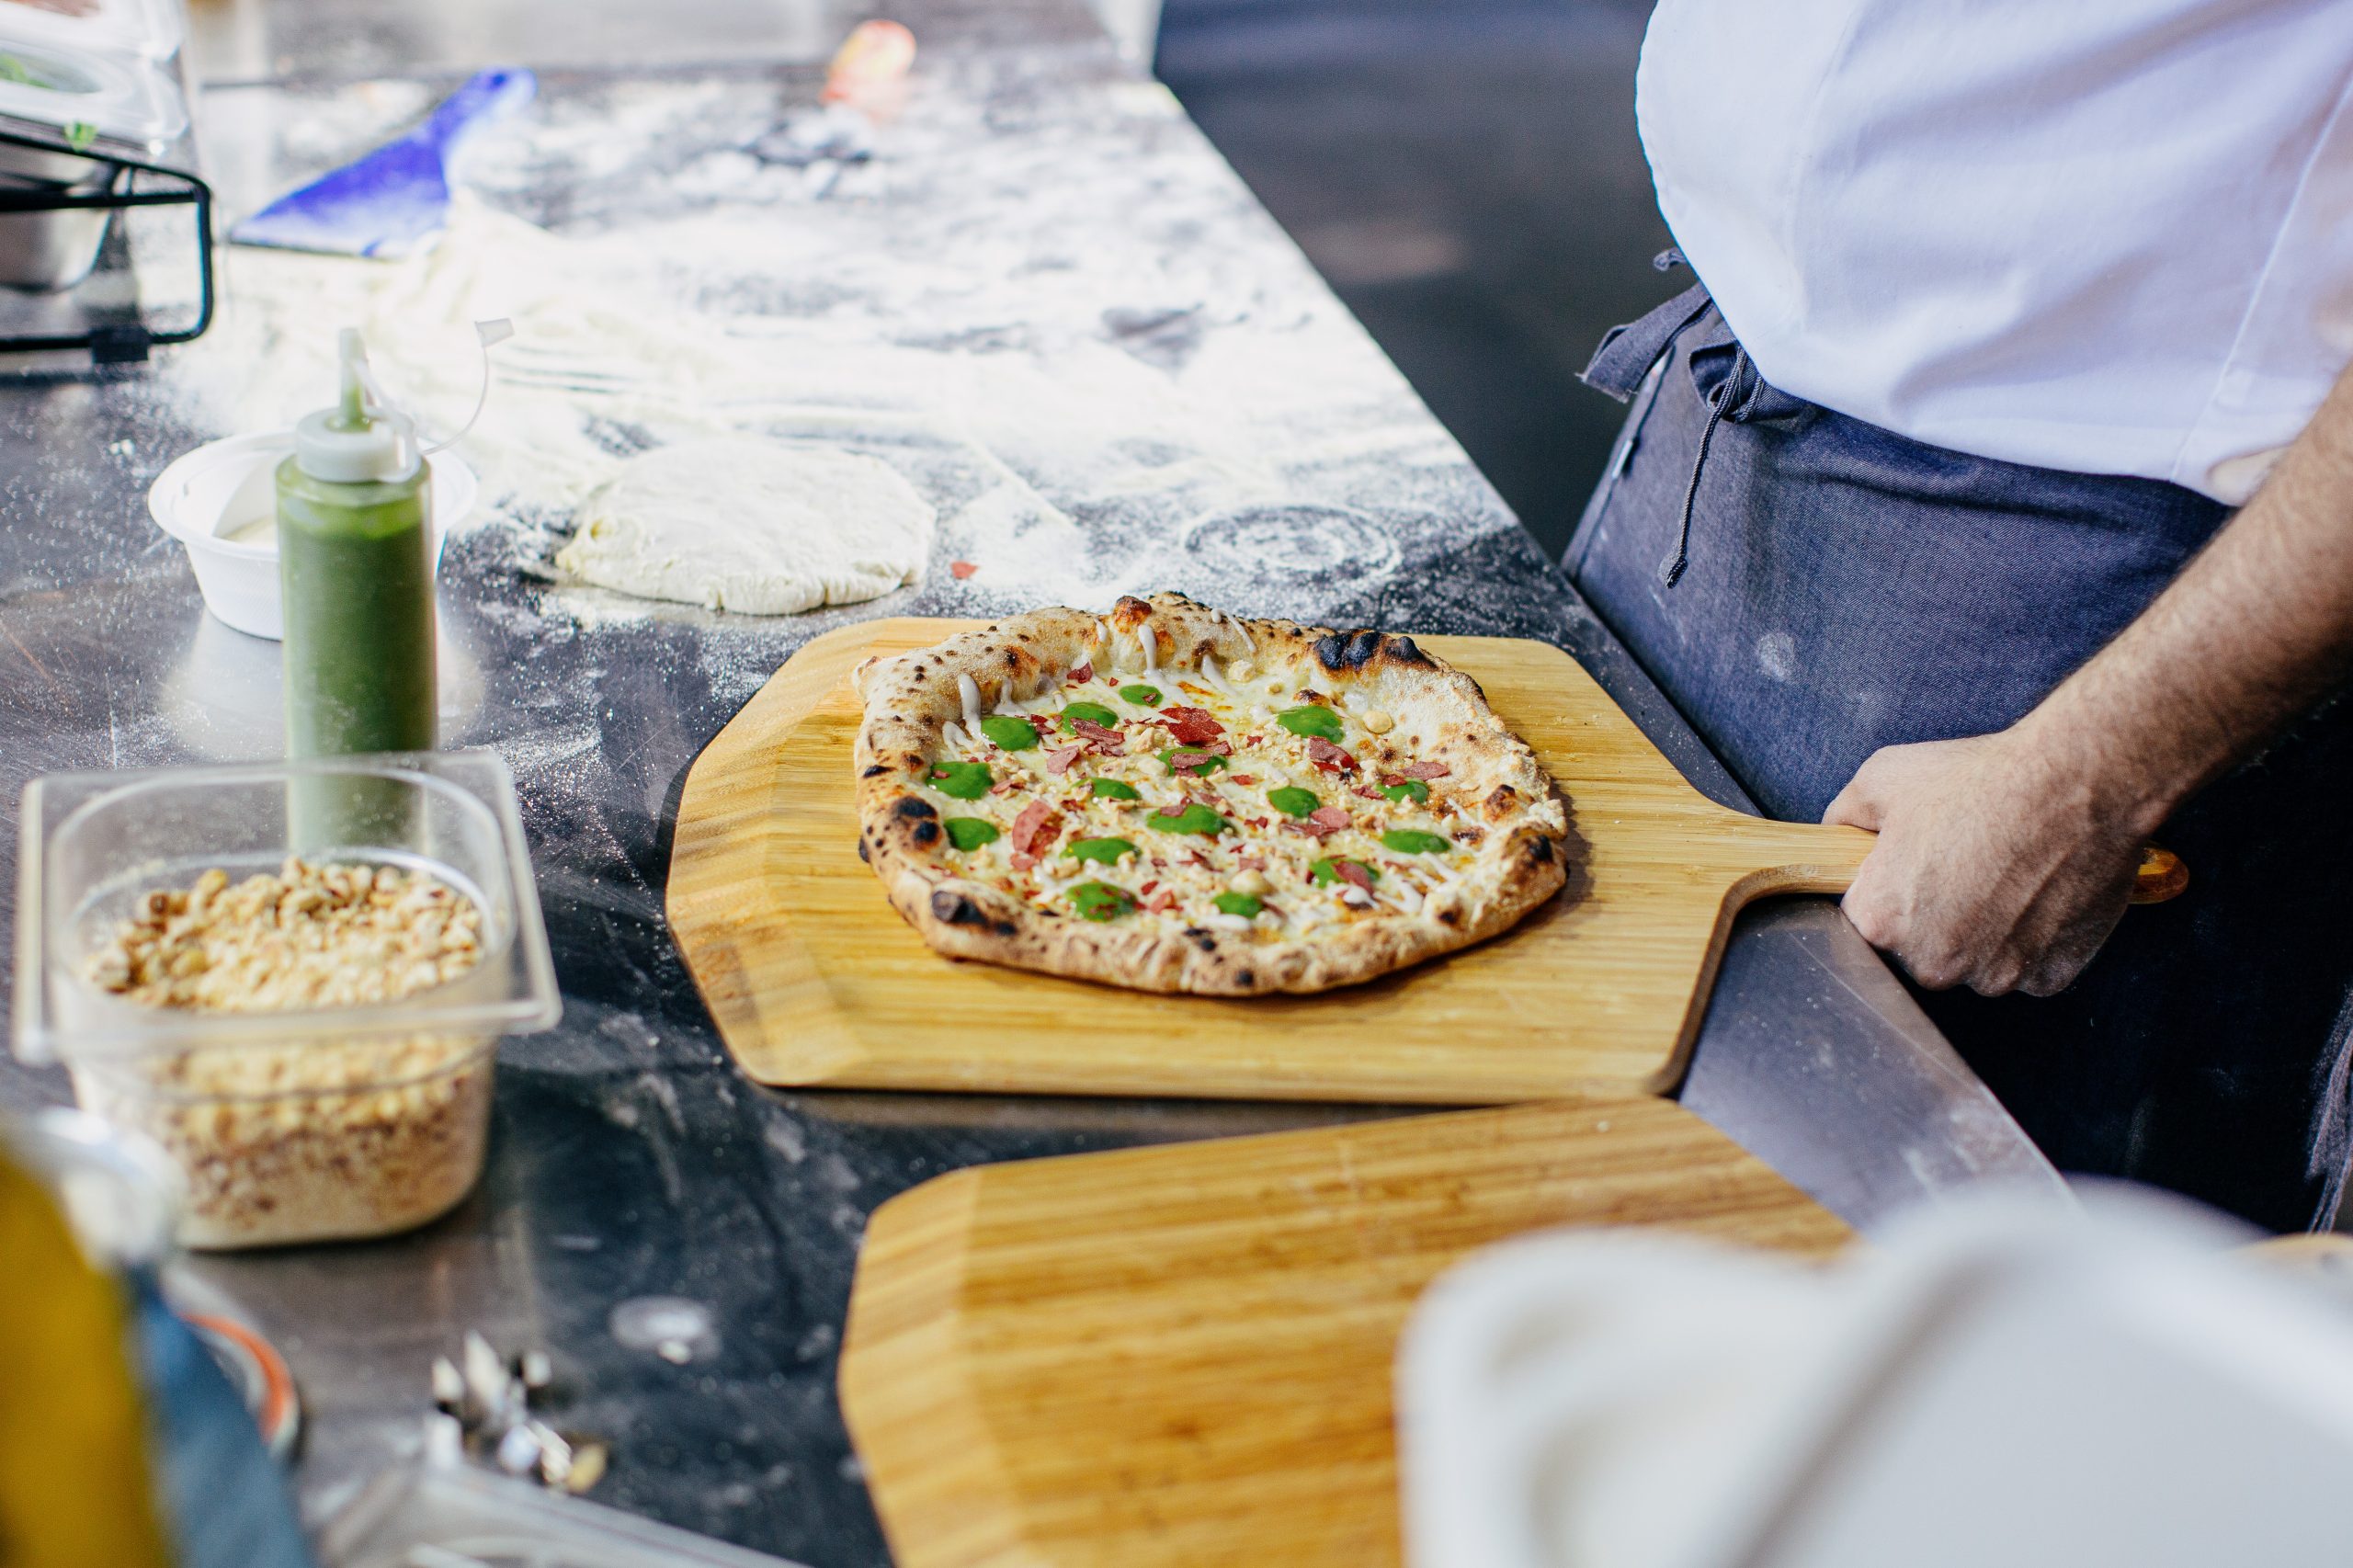 Hands-on pizza alla pala & prosecco at 2:00pm La Scuola 1/21/2023